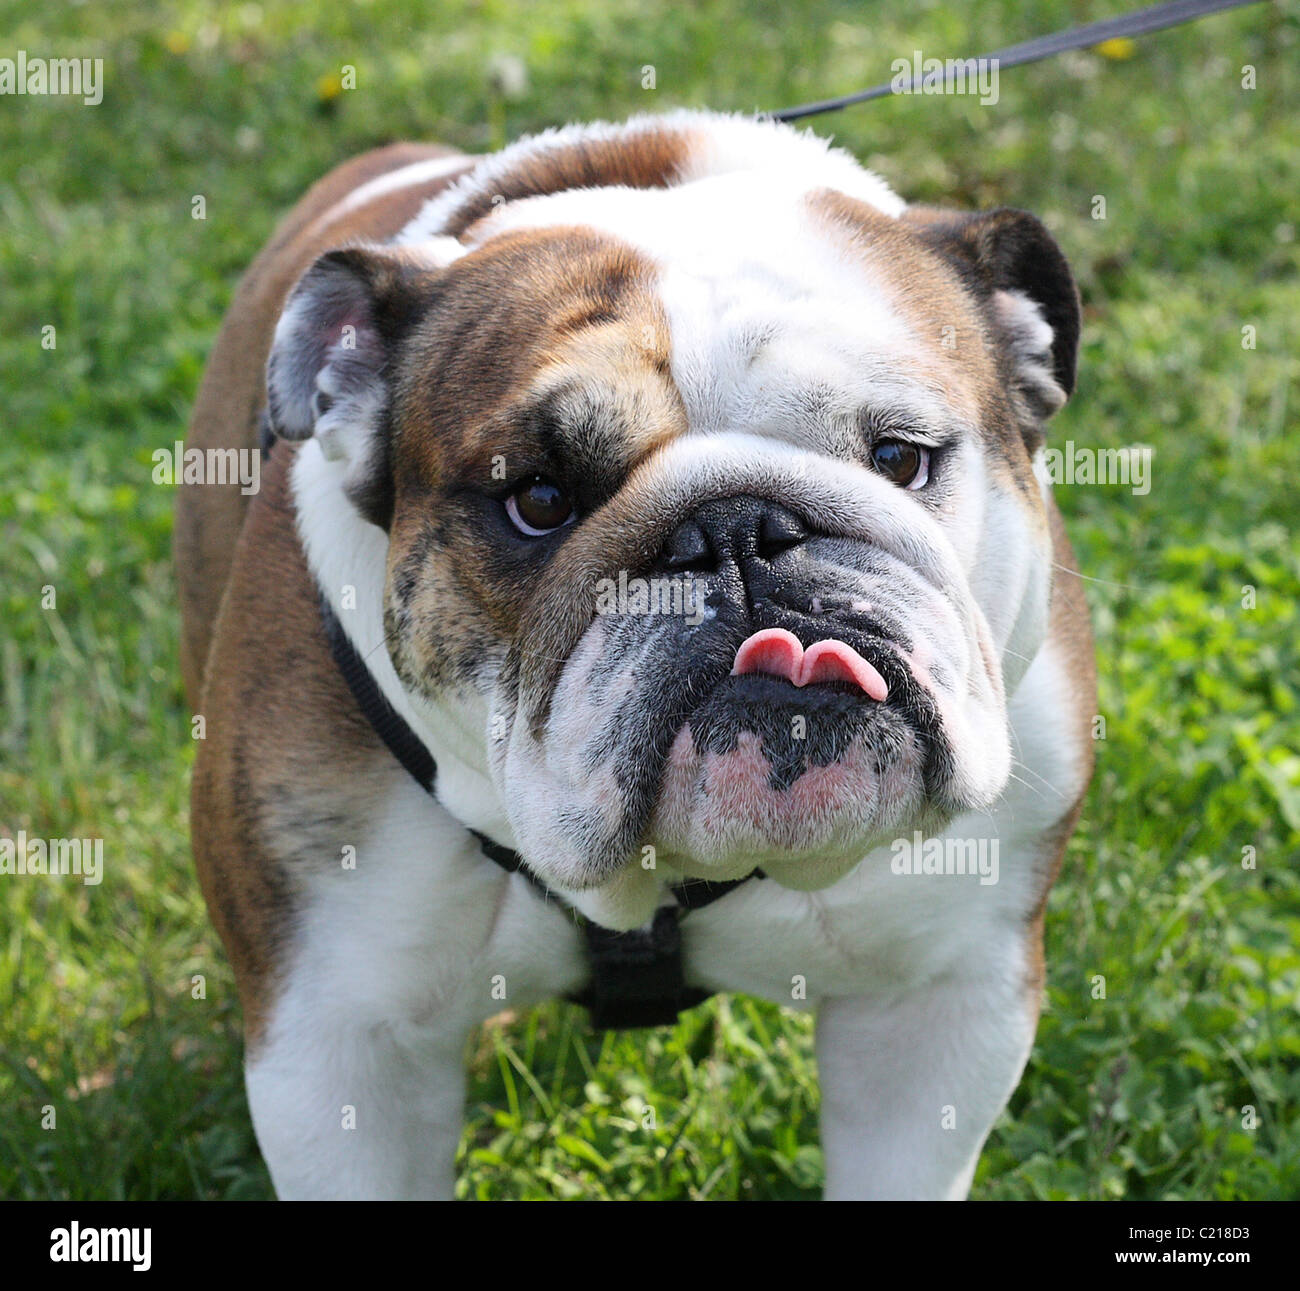 Bulldog en el parque con su lengua sobresaliendo. Foto de stock